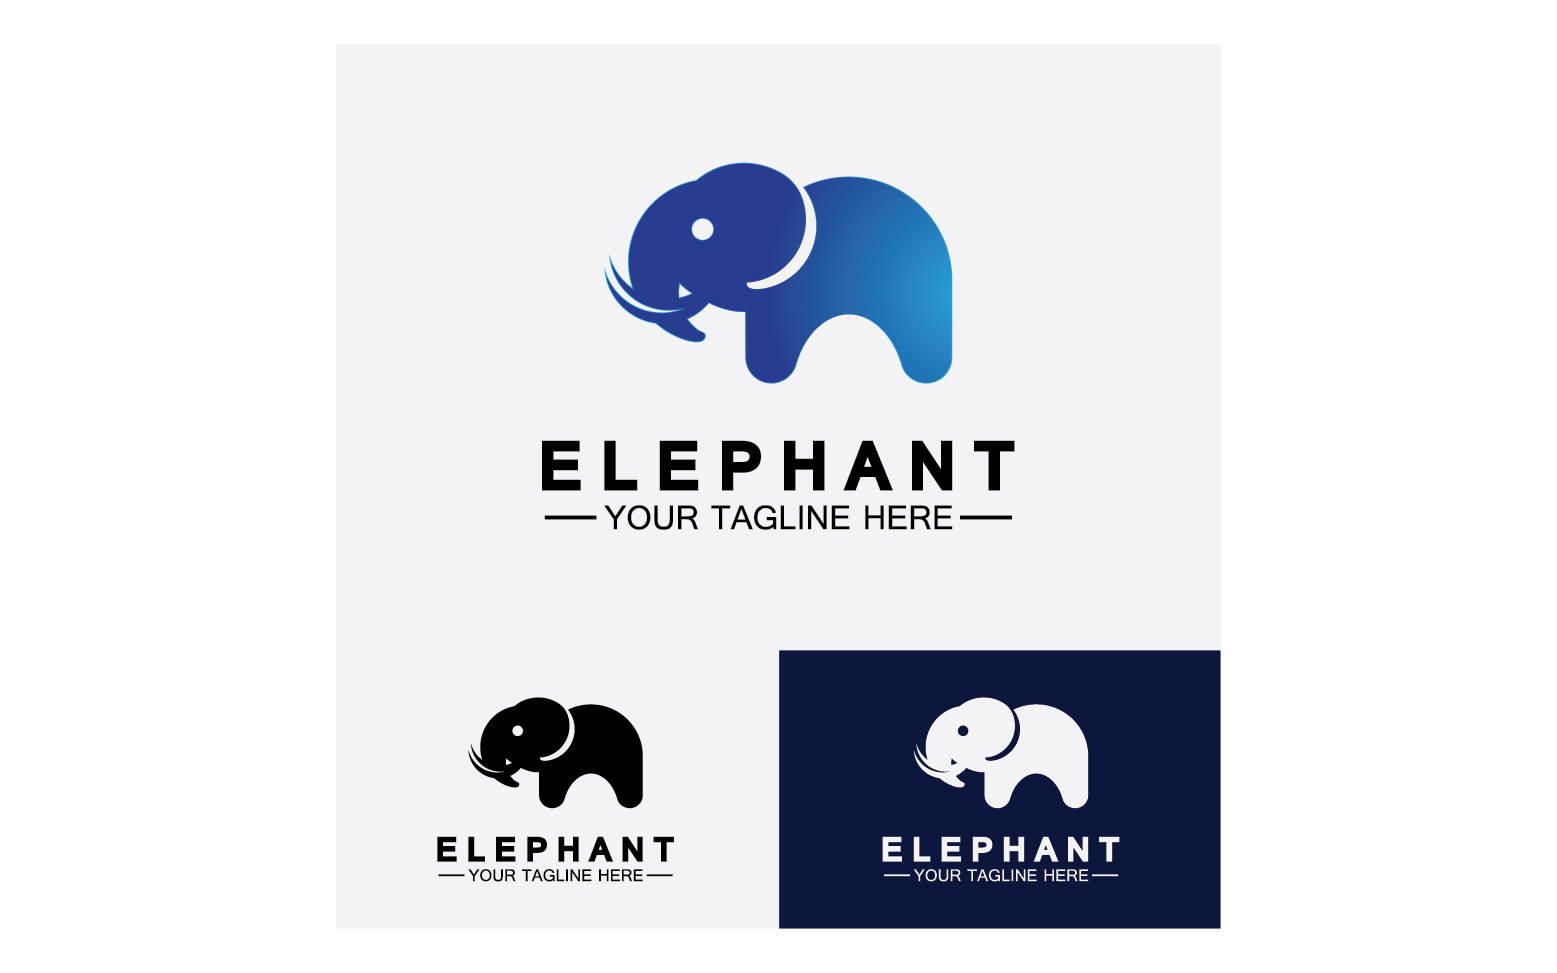 Kit Graphique #355984 Animal lphant Divers Modles Web - Logo template Preview